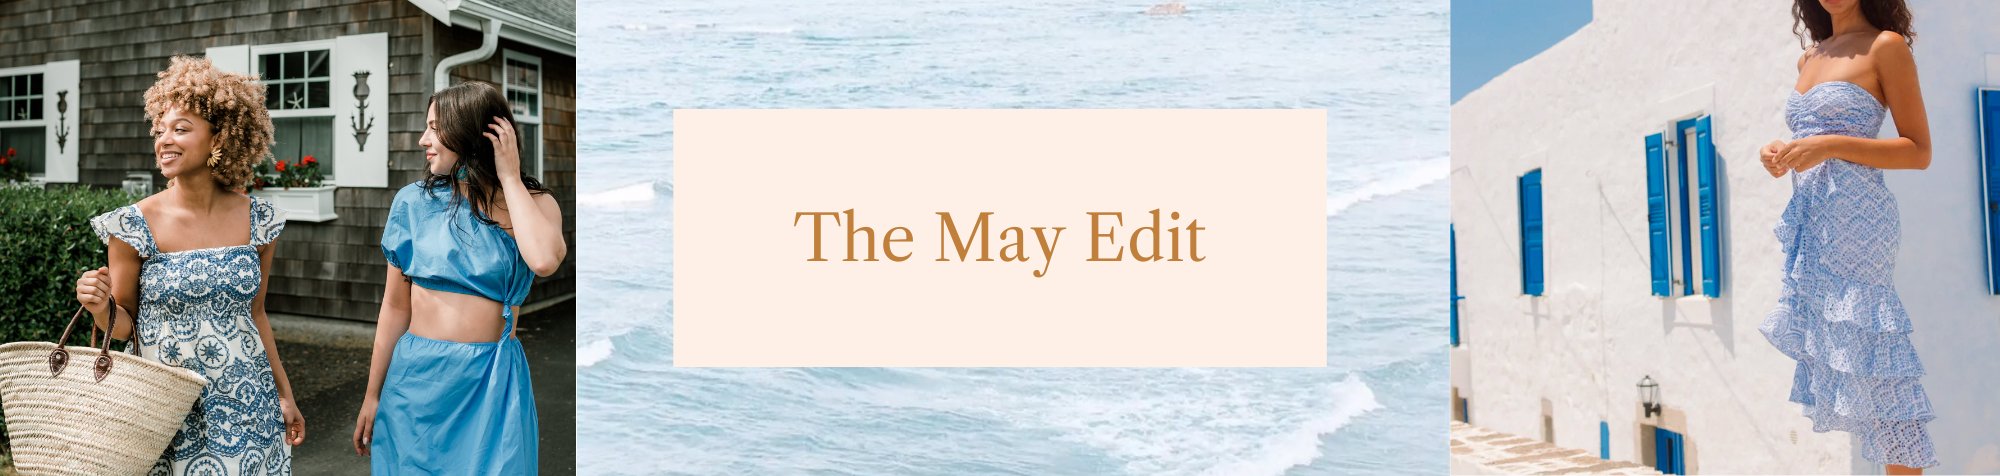 The May Edit